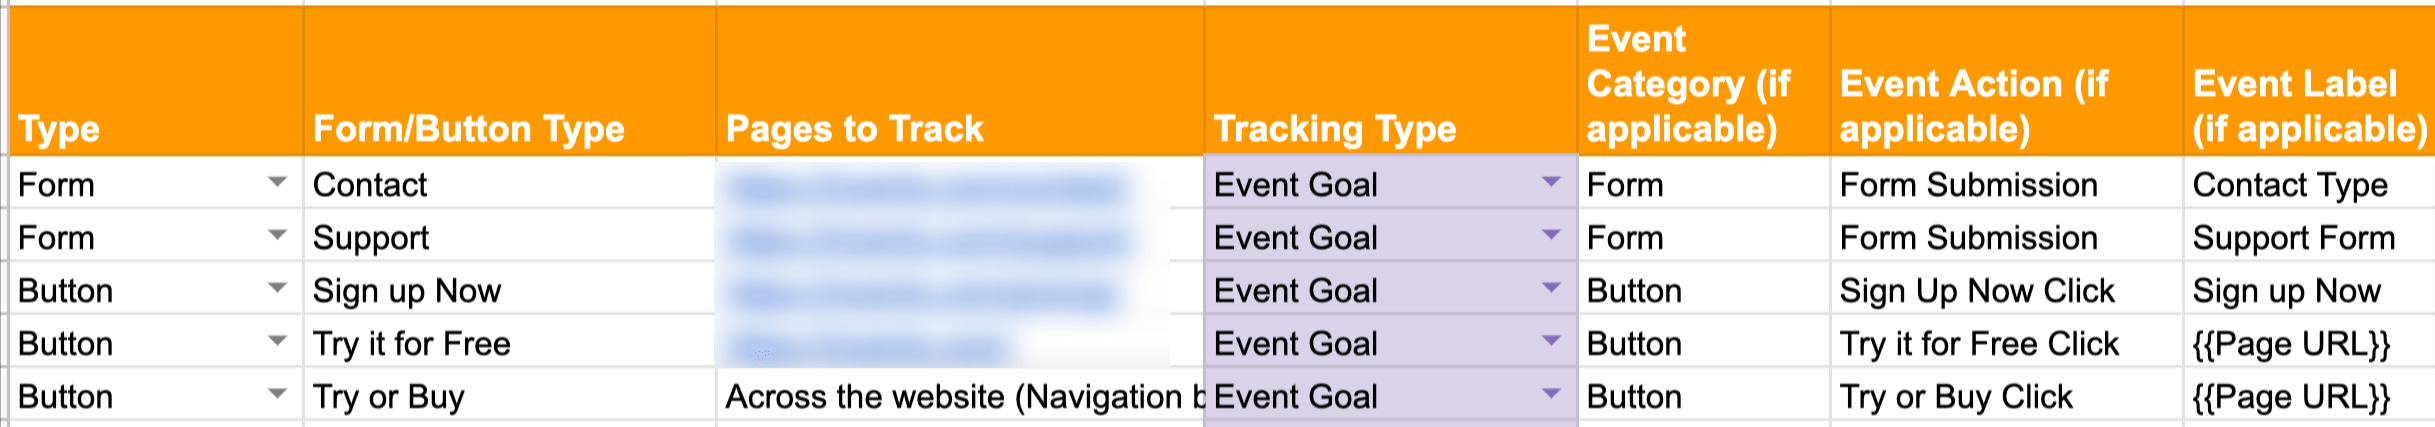 Google Analytics tracking roadmap.